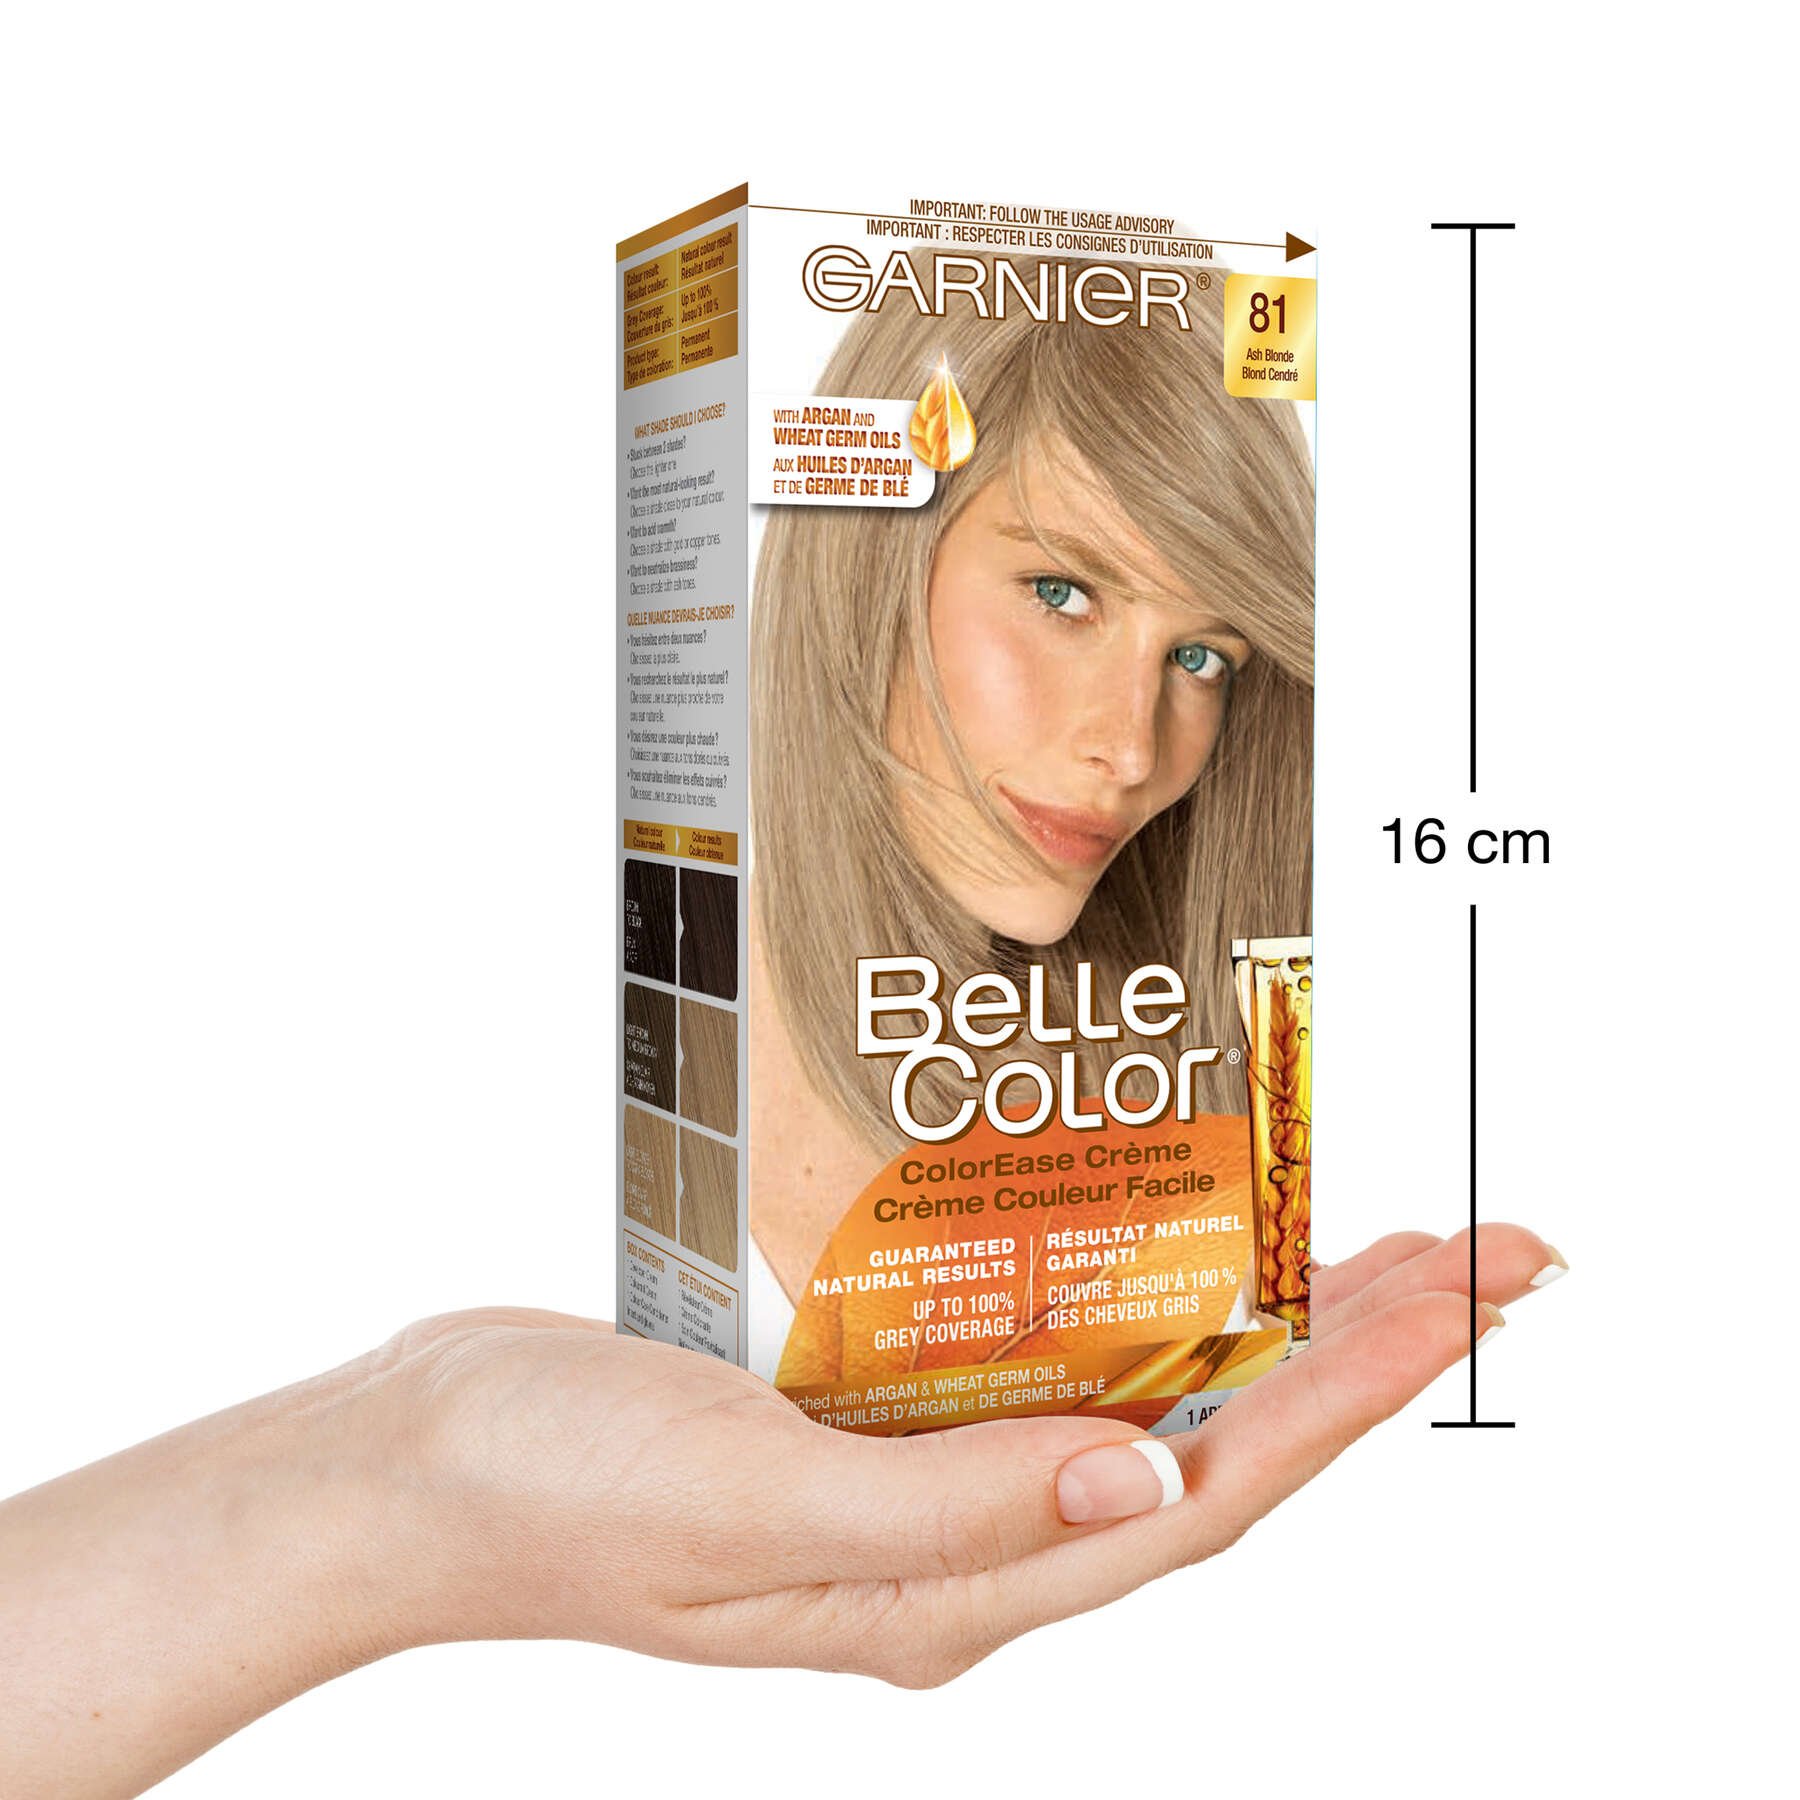 garnier hair dye belle color 81 ash blonde 70103160147 inhand